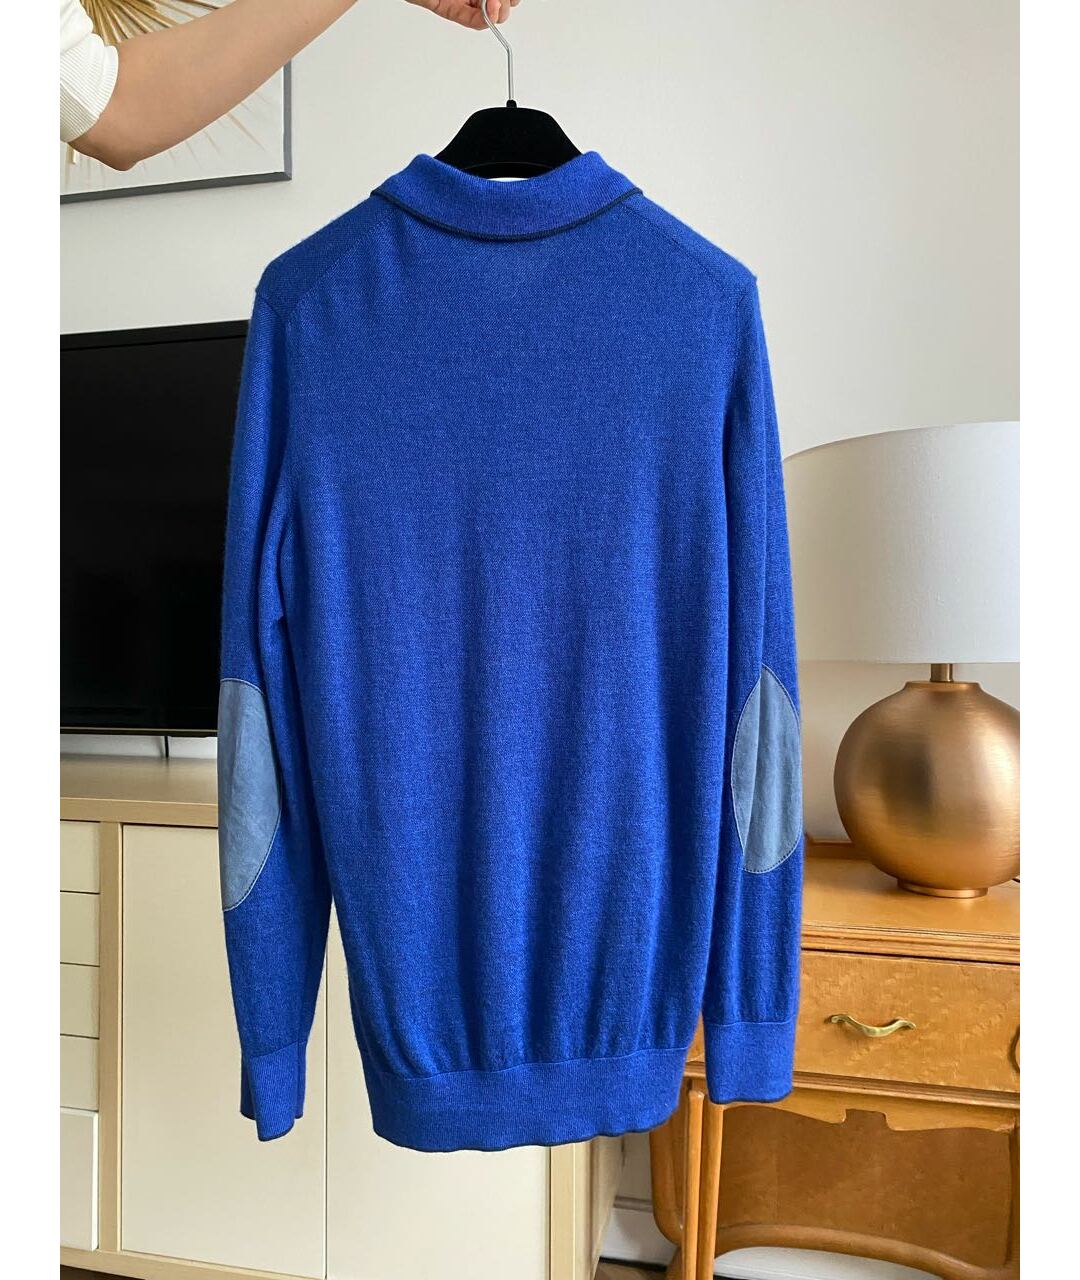 UOMO COLLEZIONI Синий кашемировый джемпер / свитер, фото 2